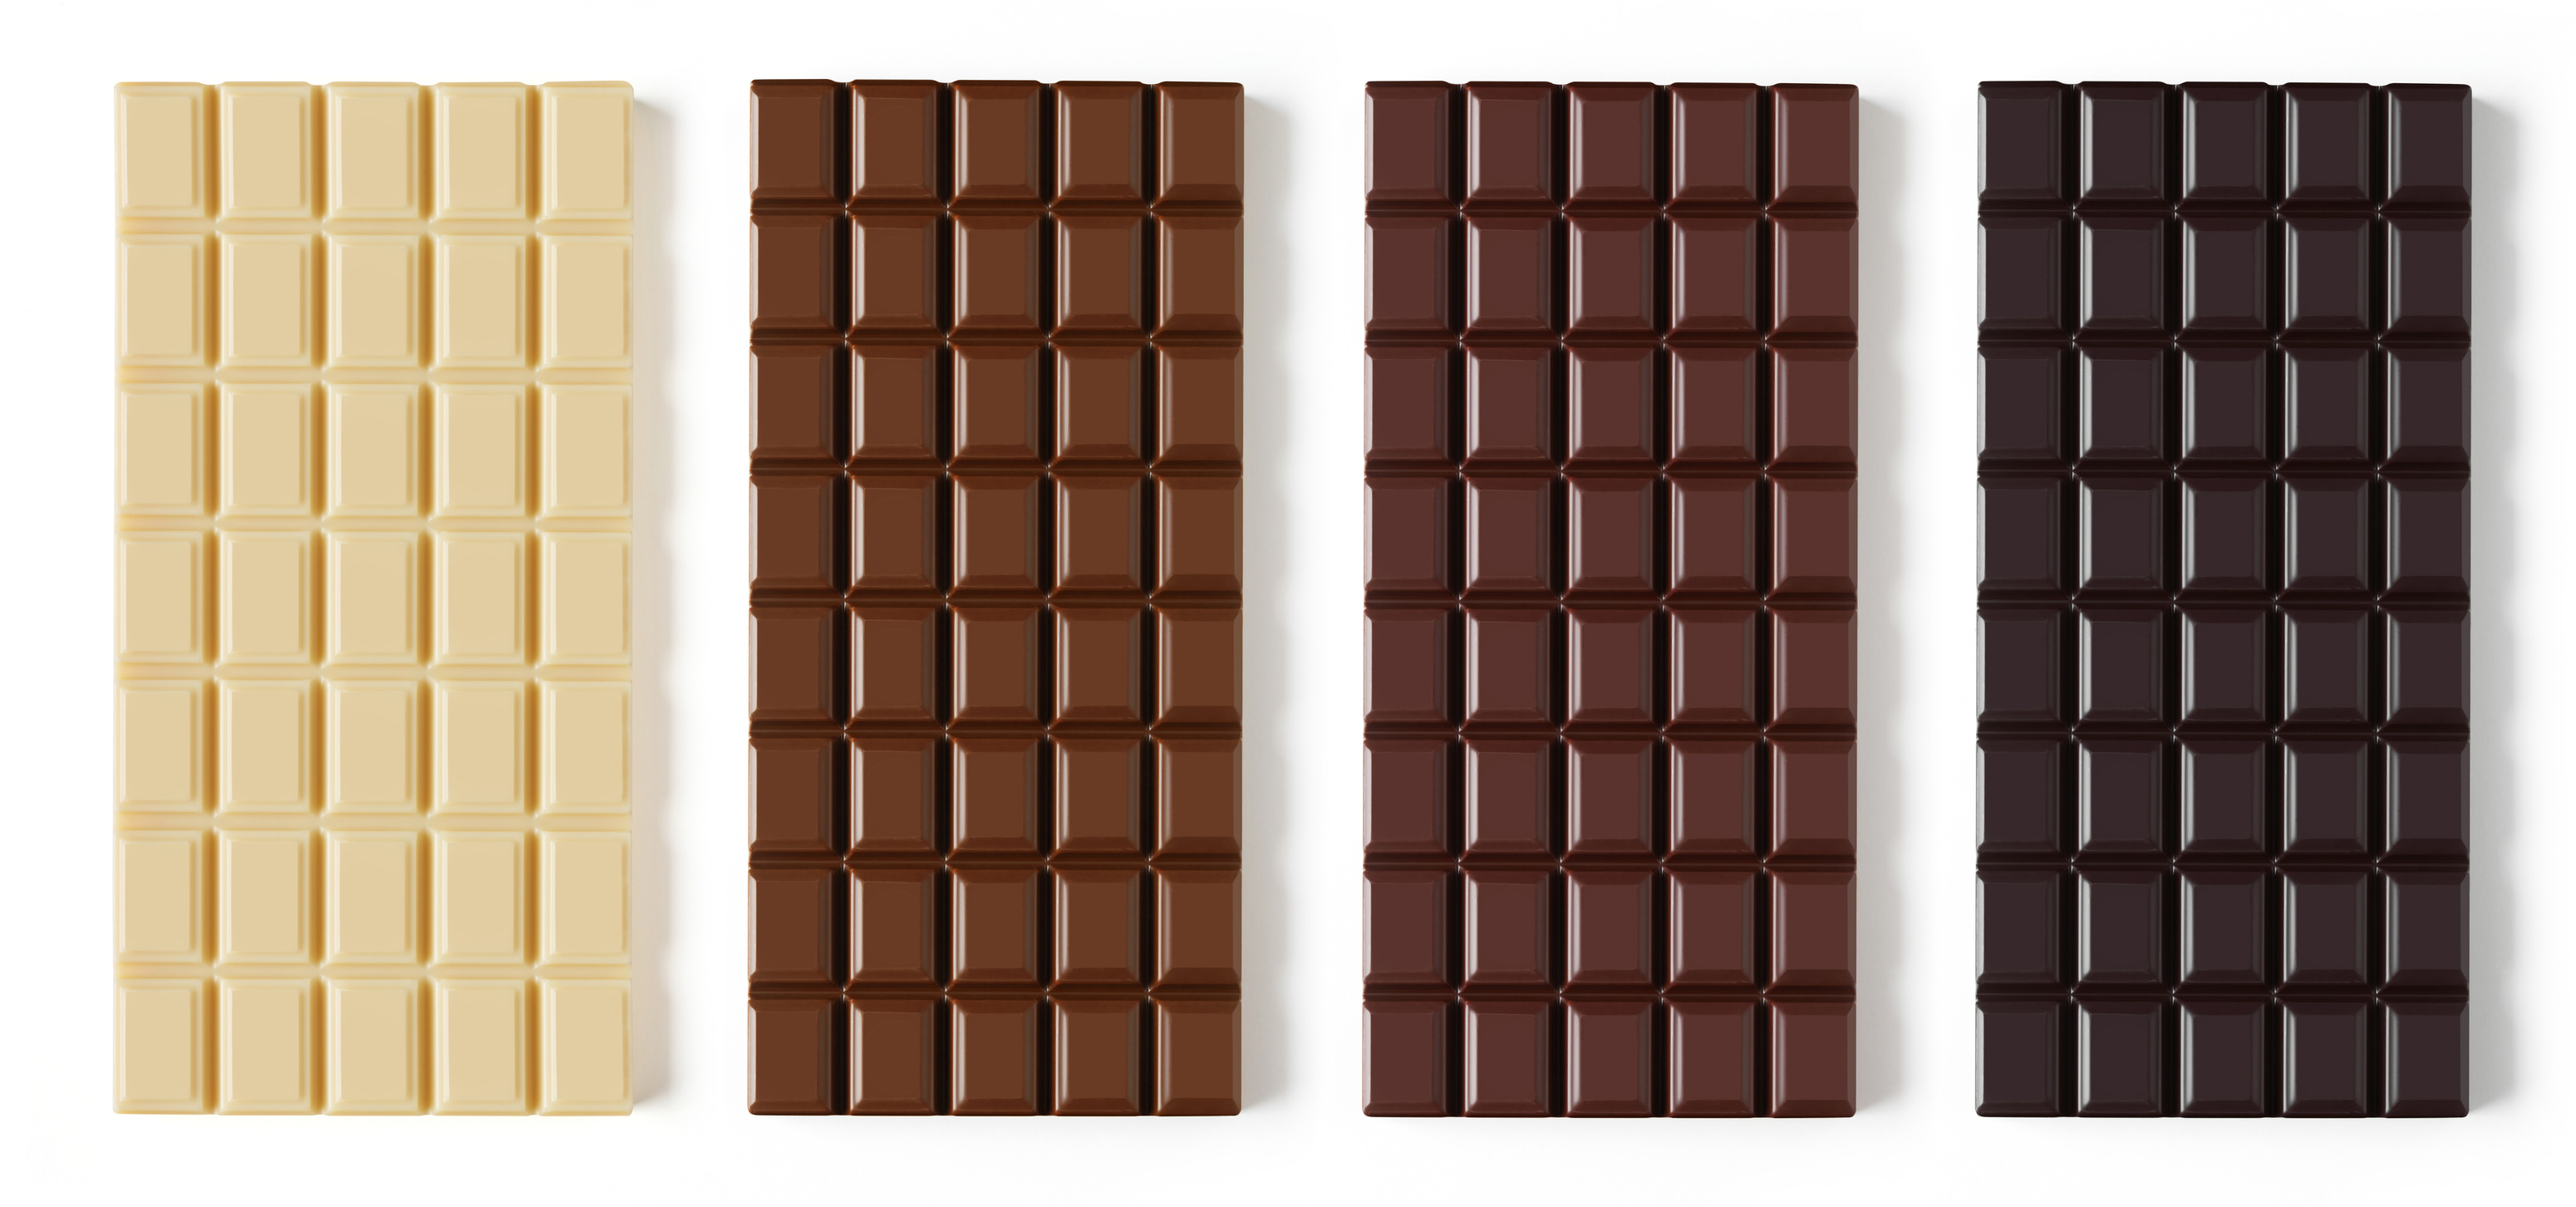 Chocolate bar variation